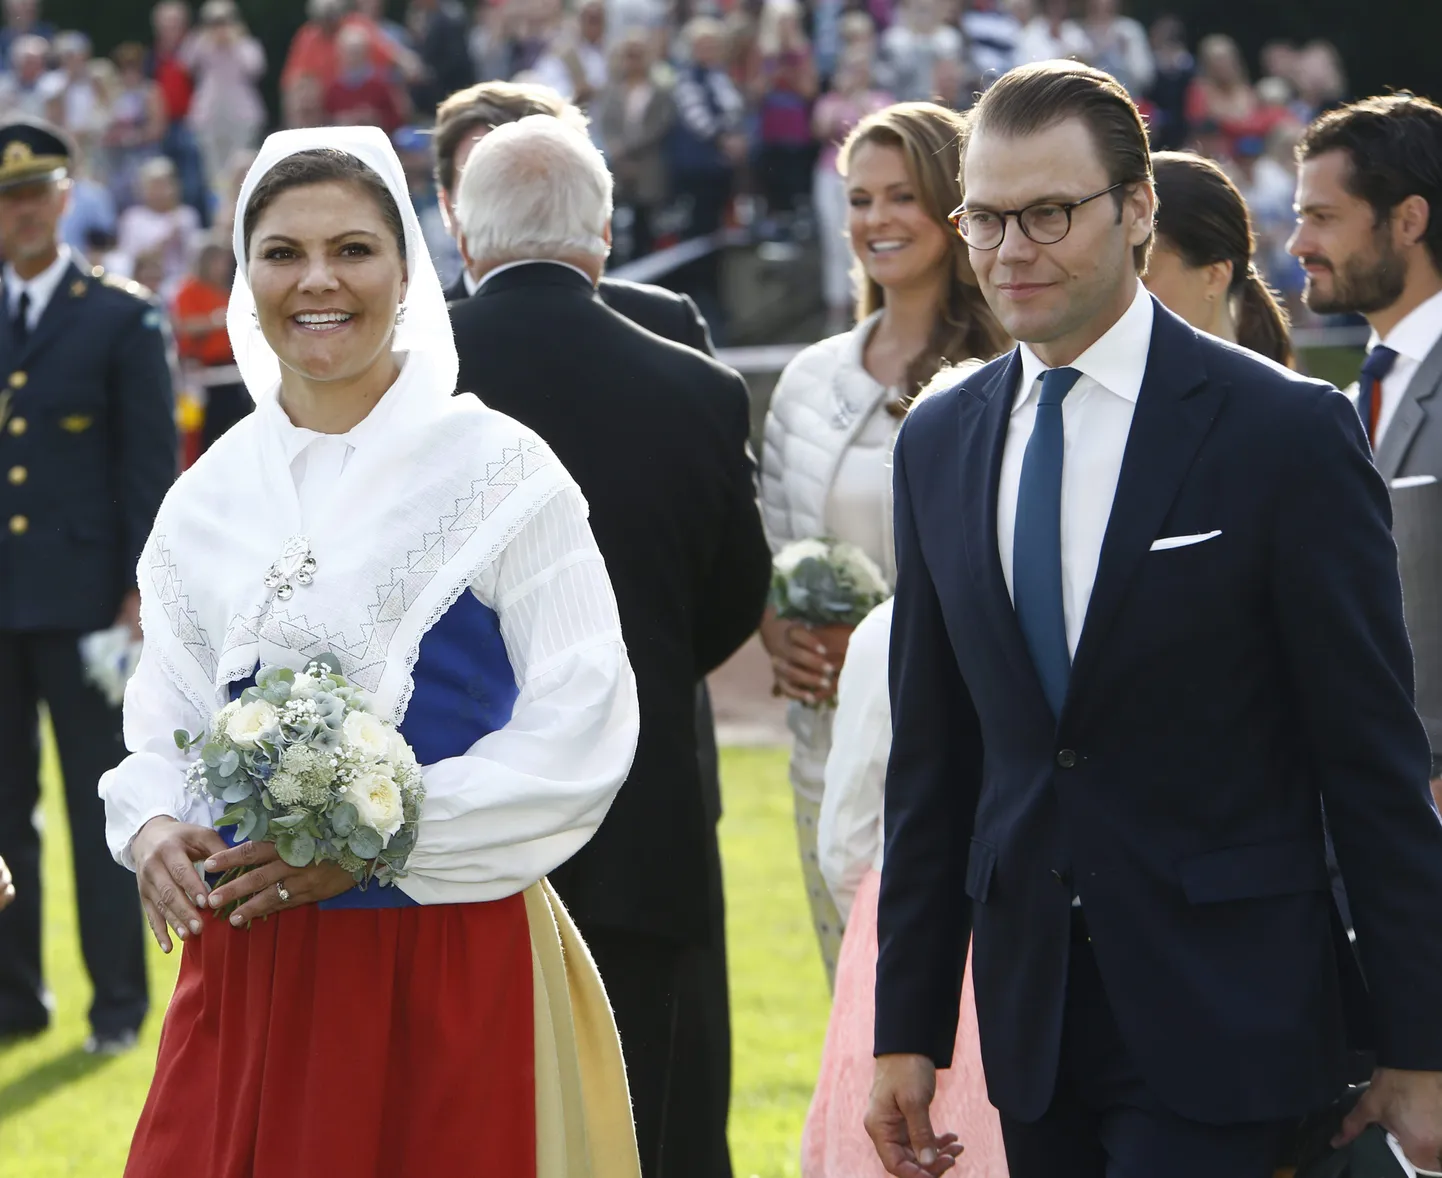 Kui kroonprintsess Victoria teeb tõenäoliselt ajalugu üle tüki aja Rootsi naismonarhiks saades, siis tema tulevaste alamate seas on pretsedenditult kõrgeks kasvanud meeste osakaal.